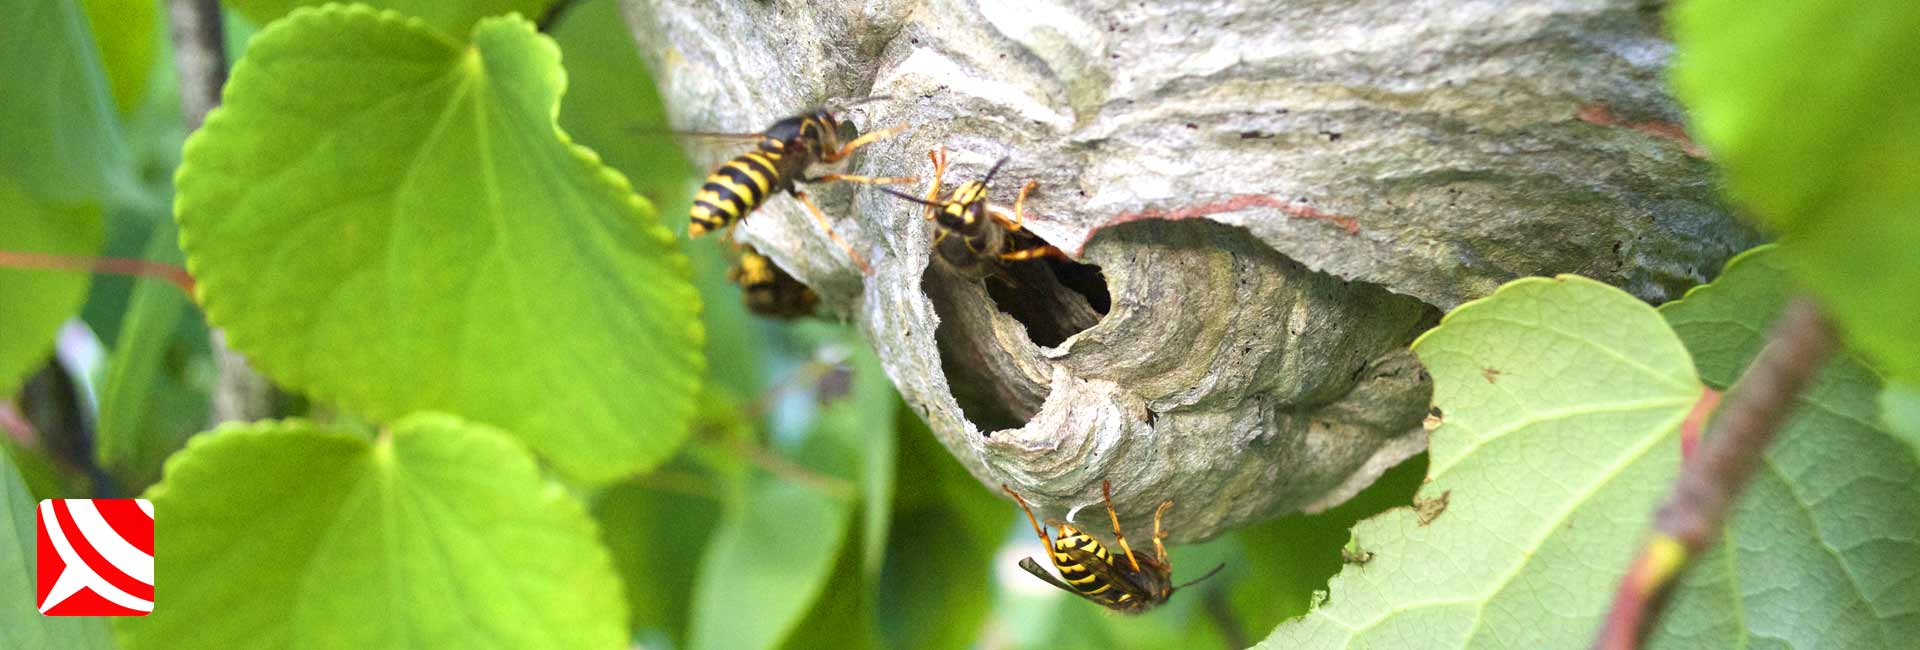 median wasps nest